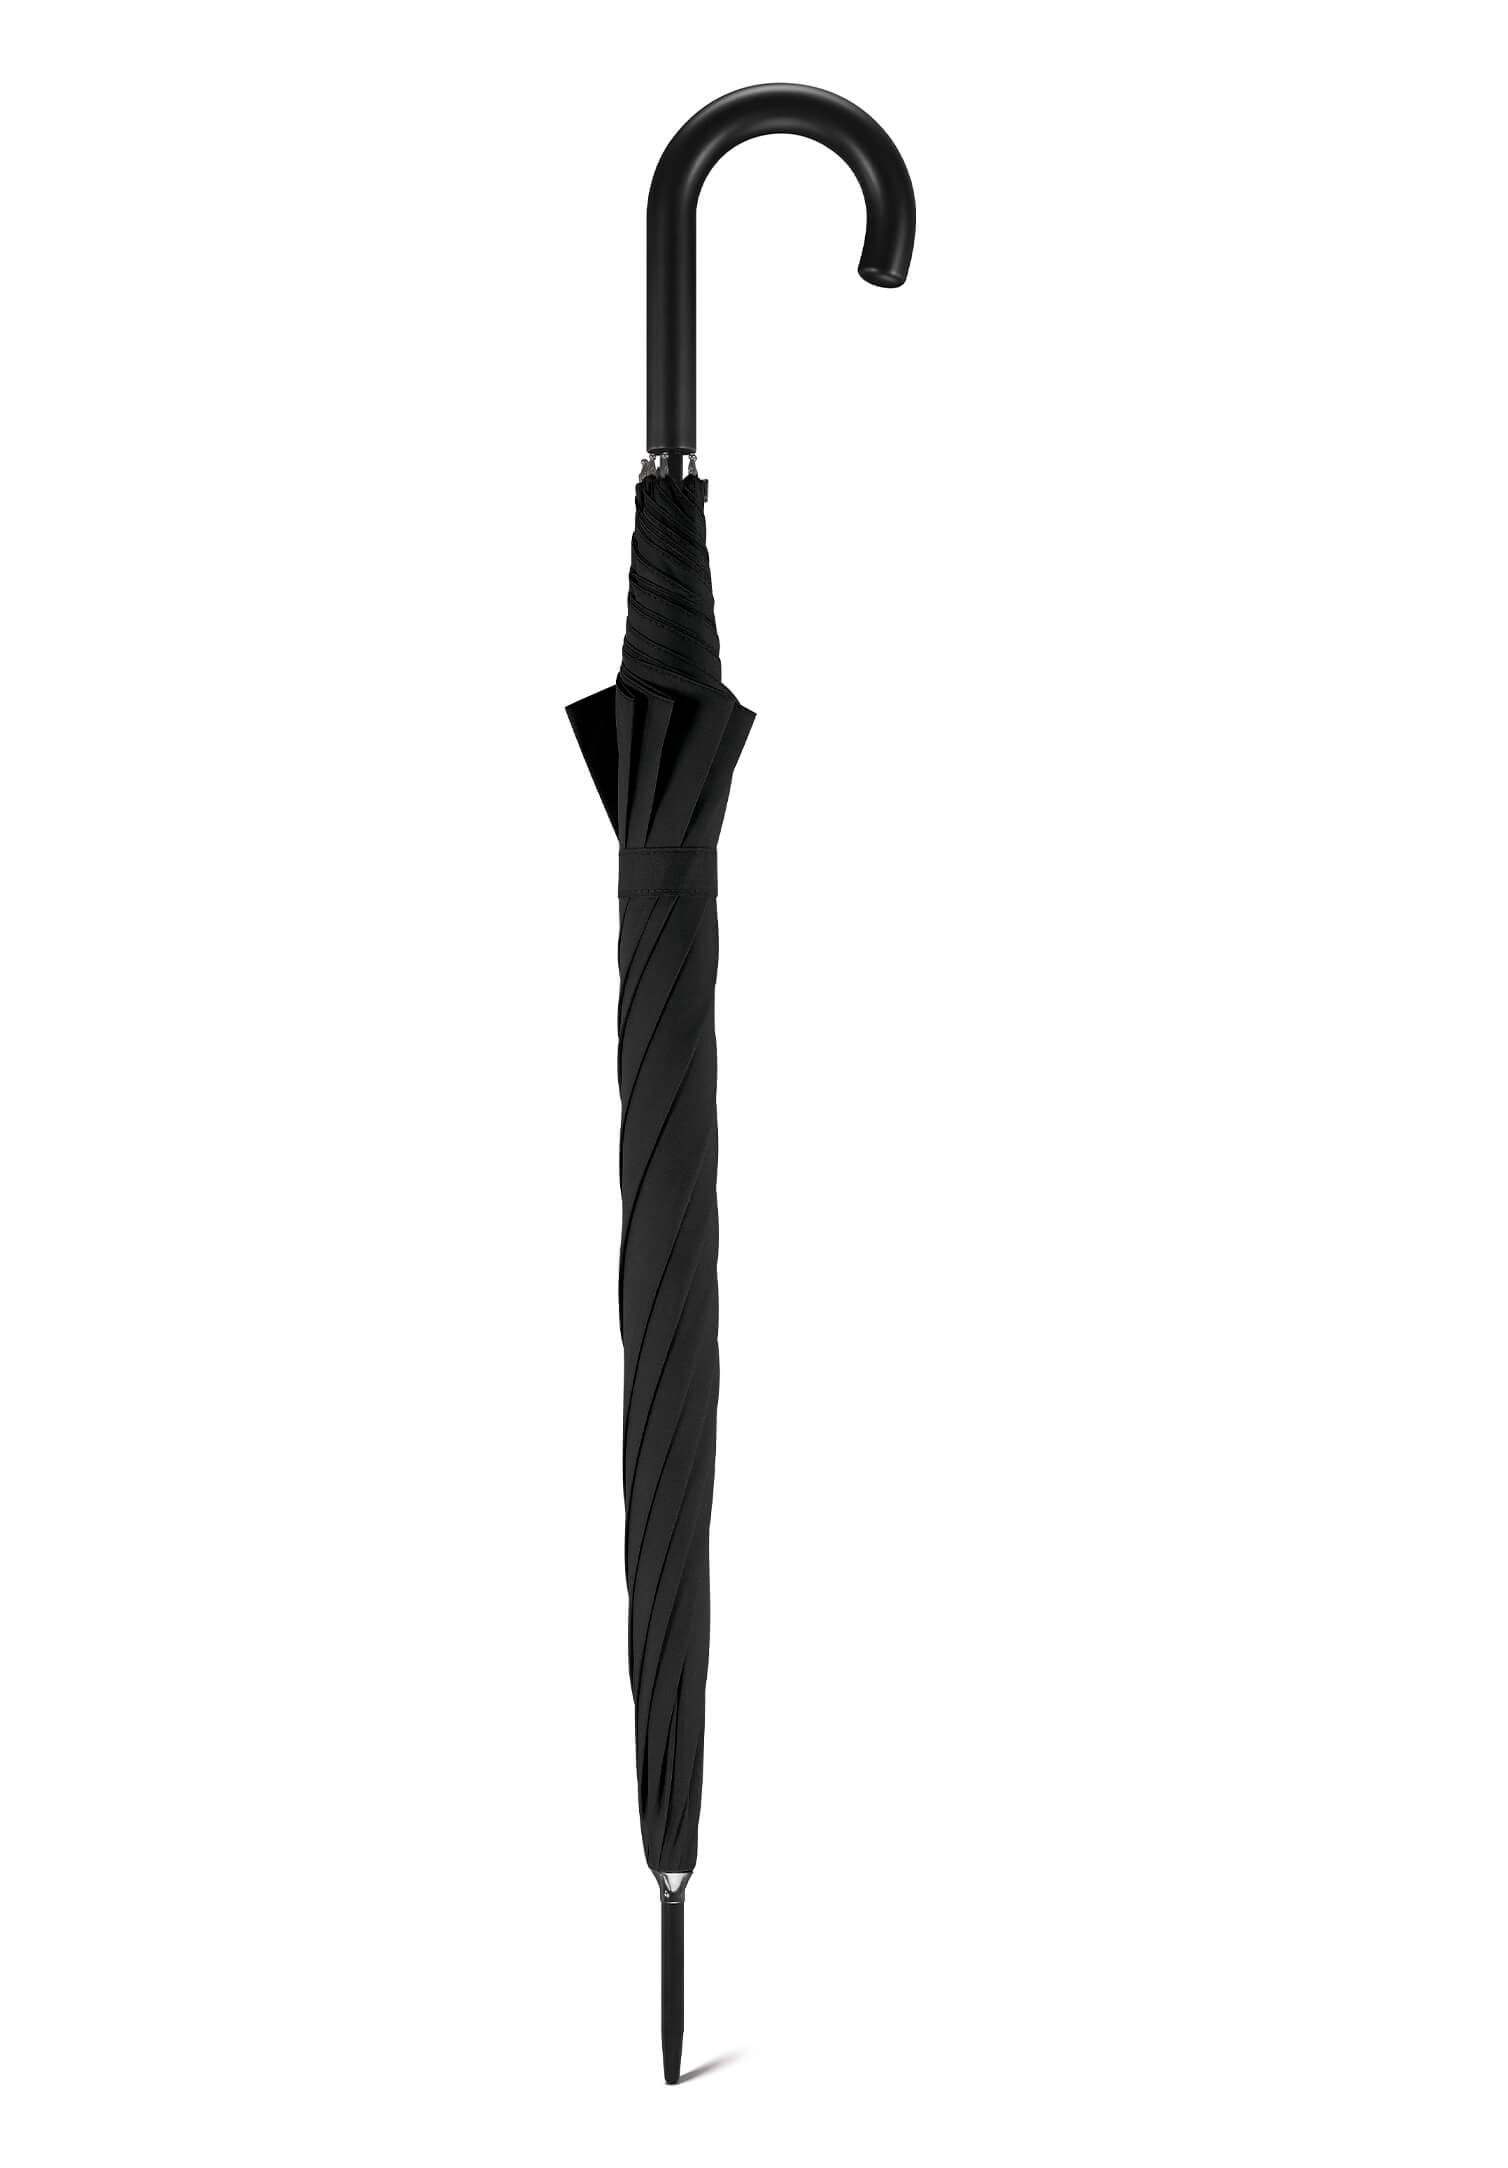 Regenschirm mit Öffnungsautomatik - Ø 106cm - schwarz